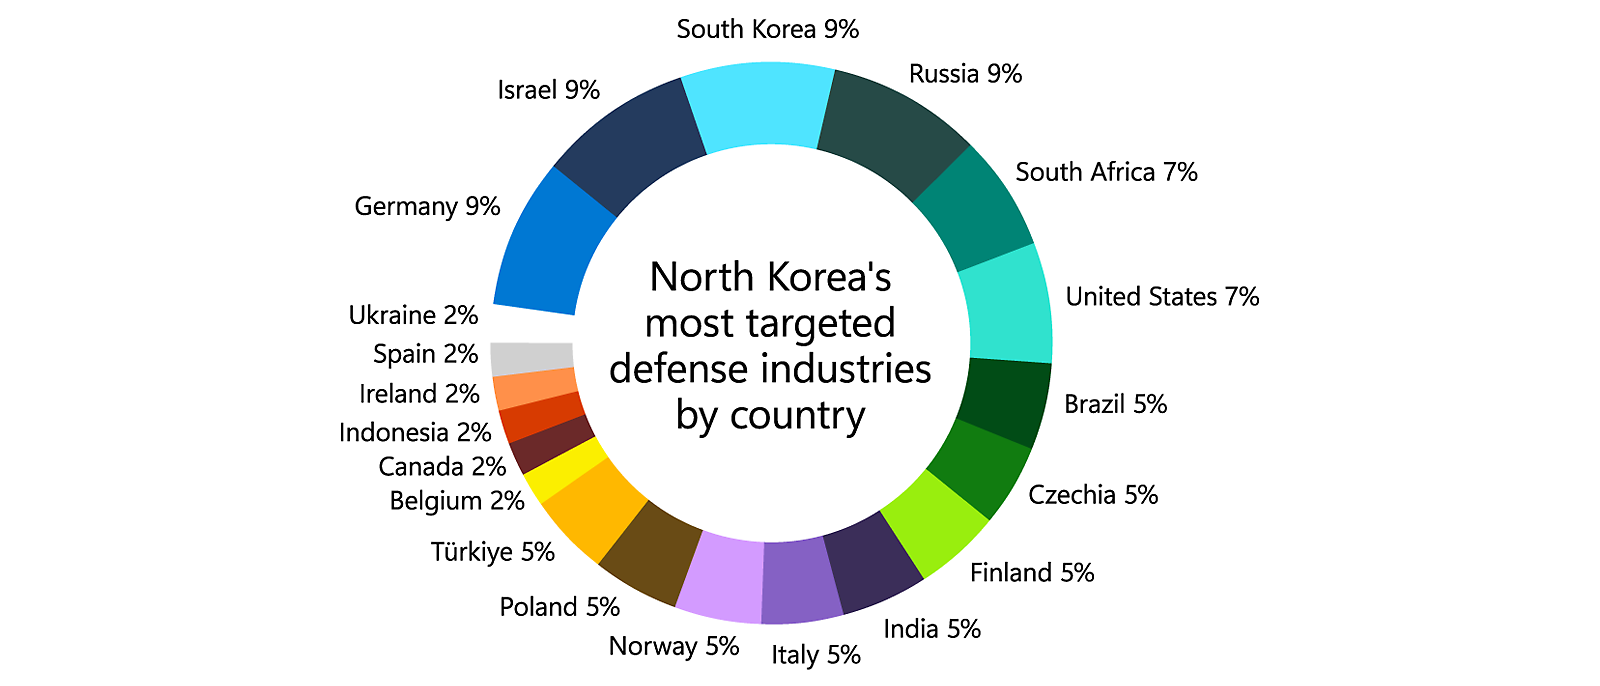 圓形圖展示北韓依國家/地區劃分的最重要國防工業目標